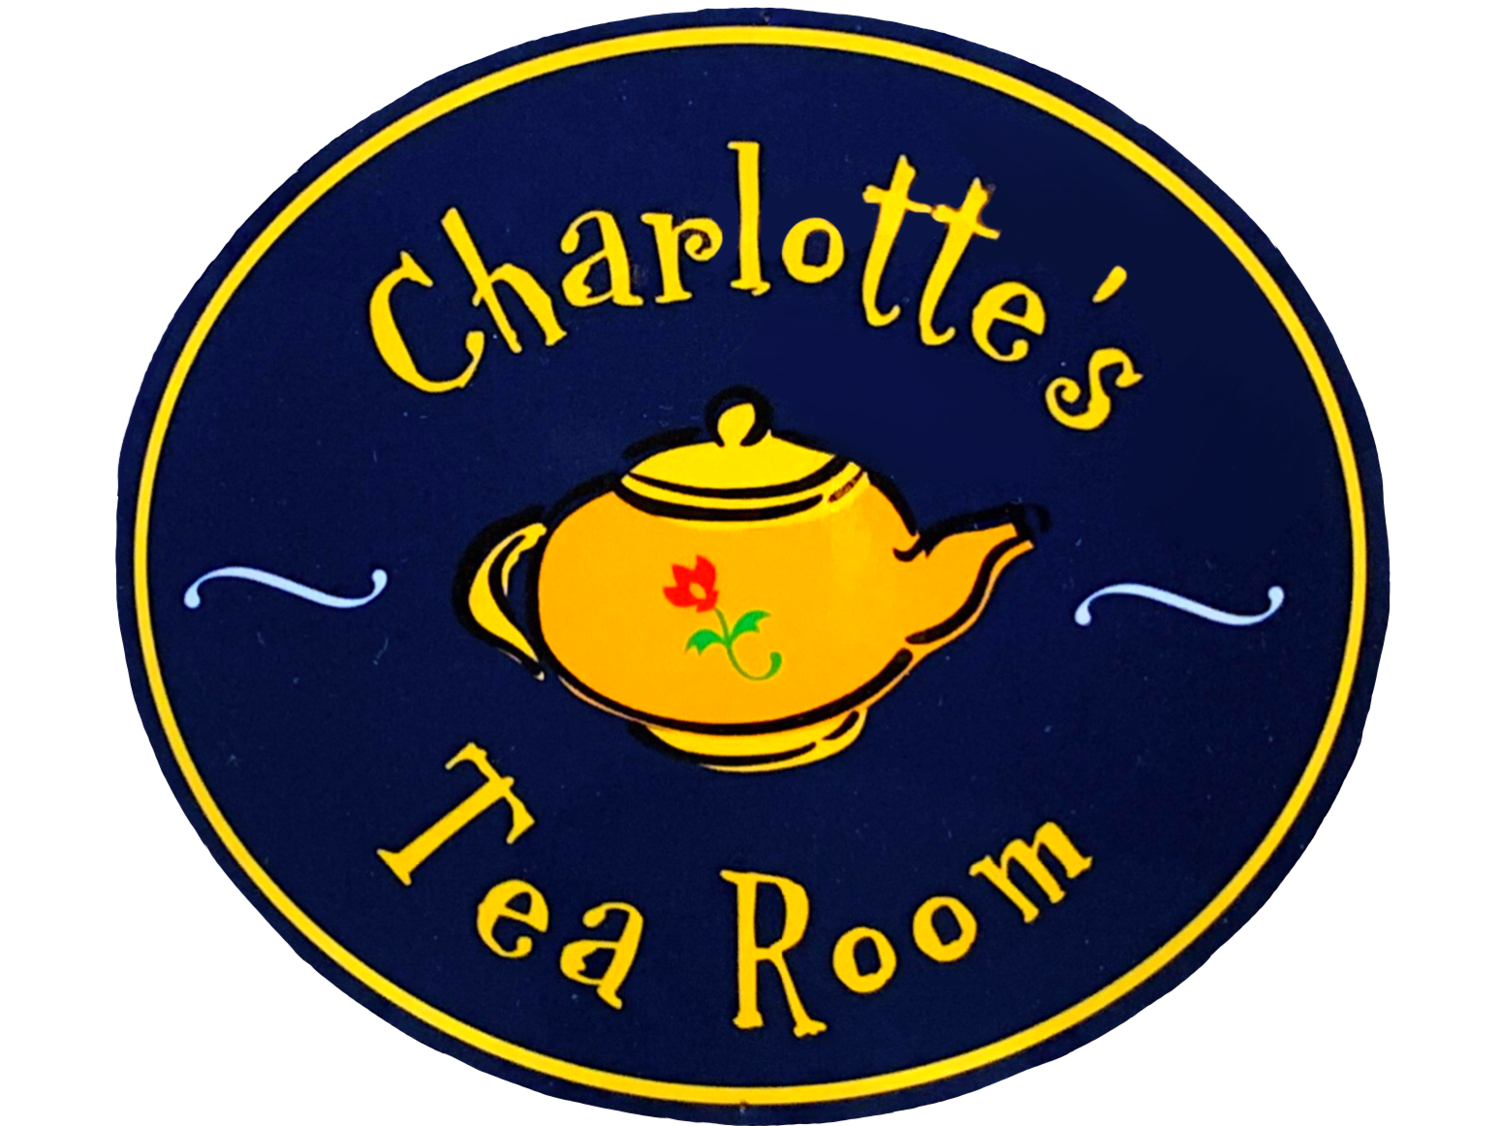 Charlotte's Tea Room